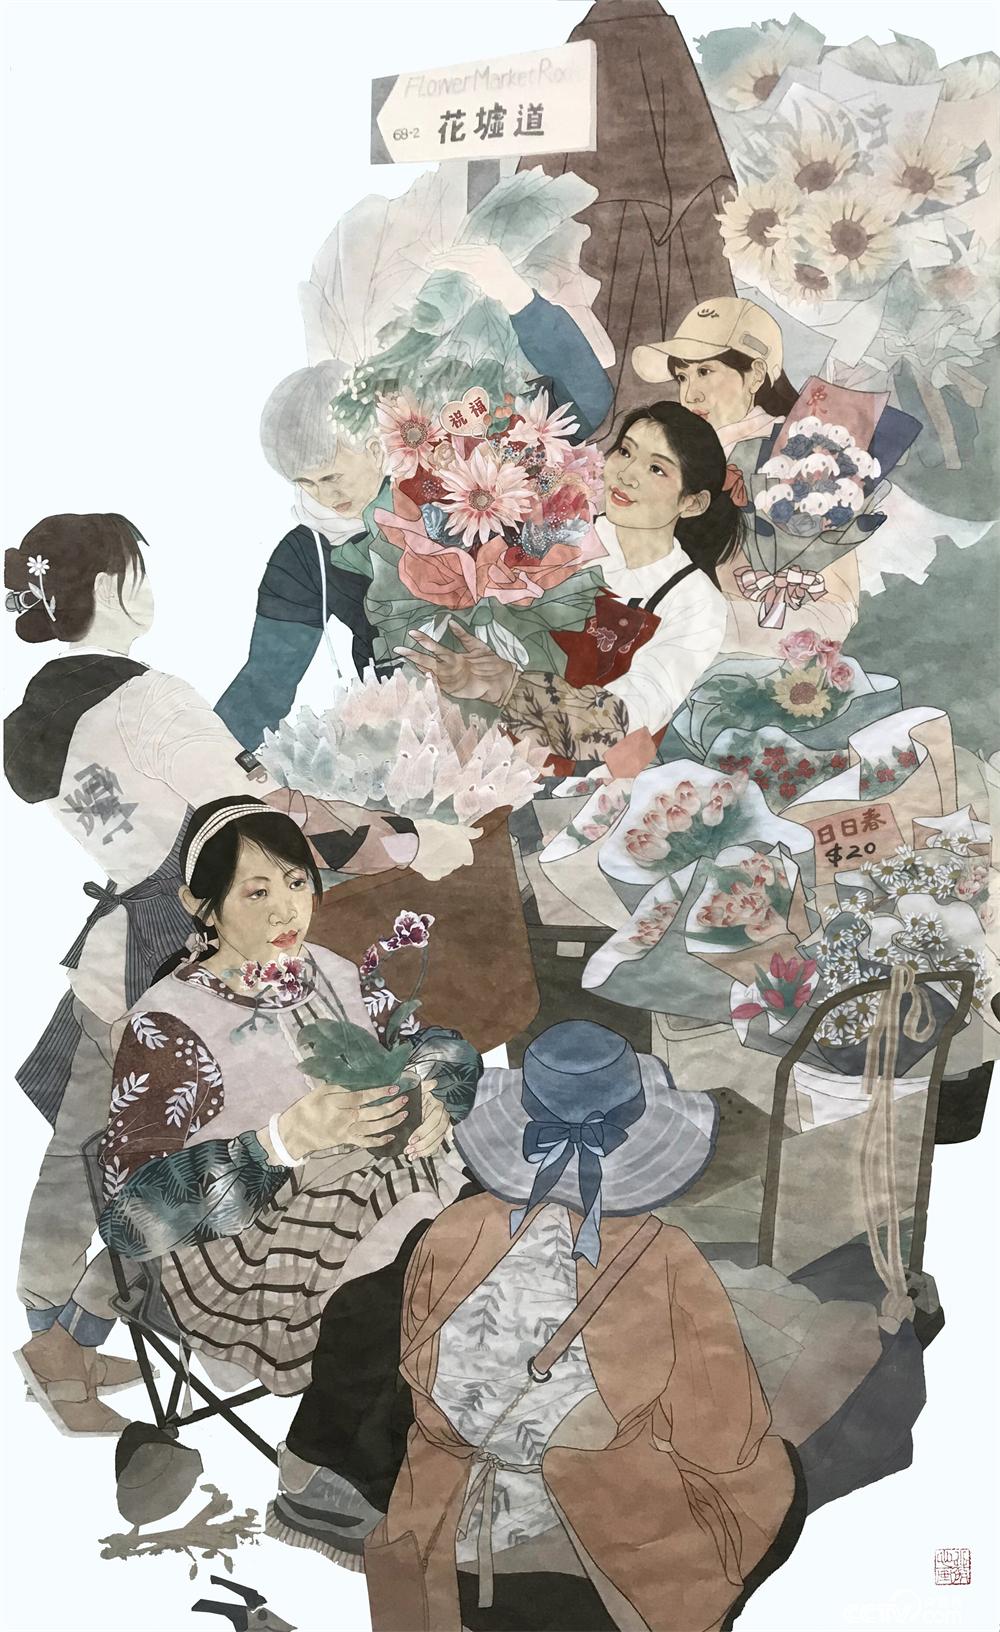 劉洋之龍、楊小薇《旺角花墟春意濃》  中國畫  200厘米×140厘米  2022